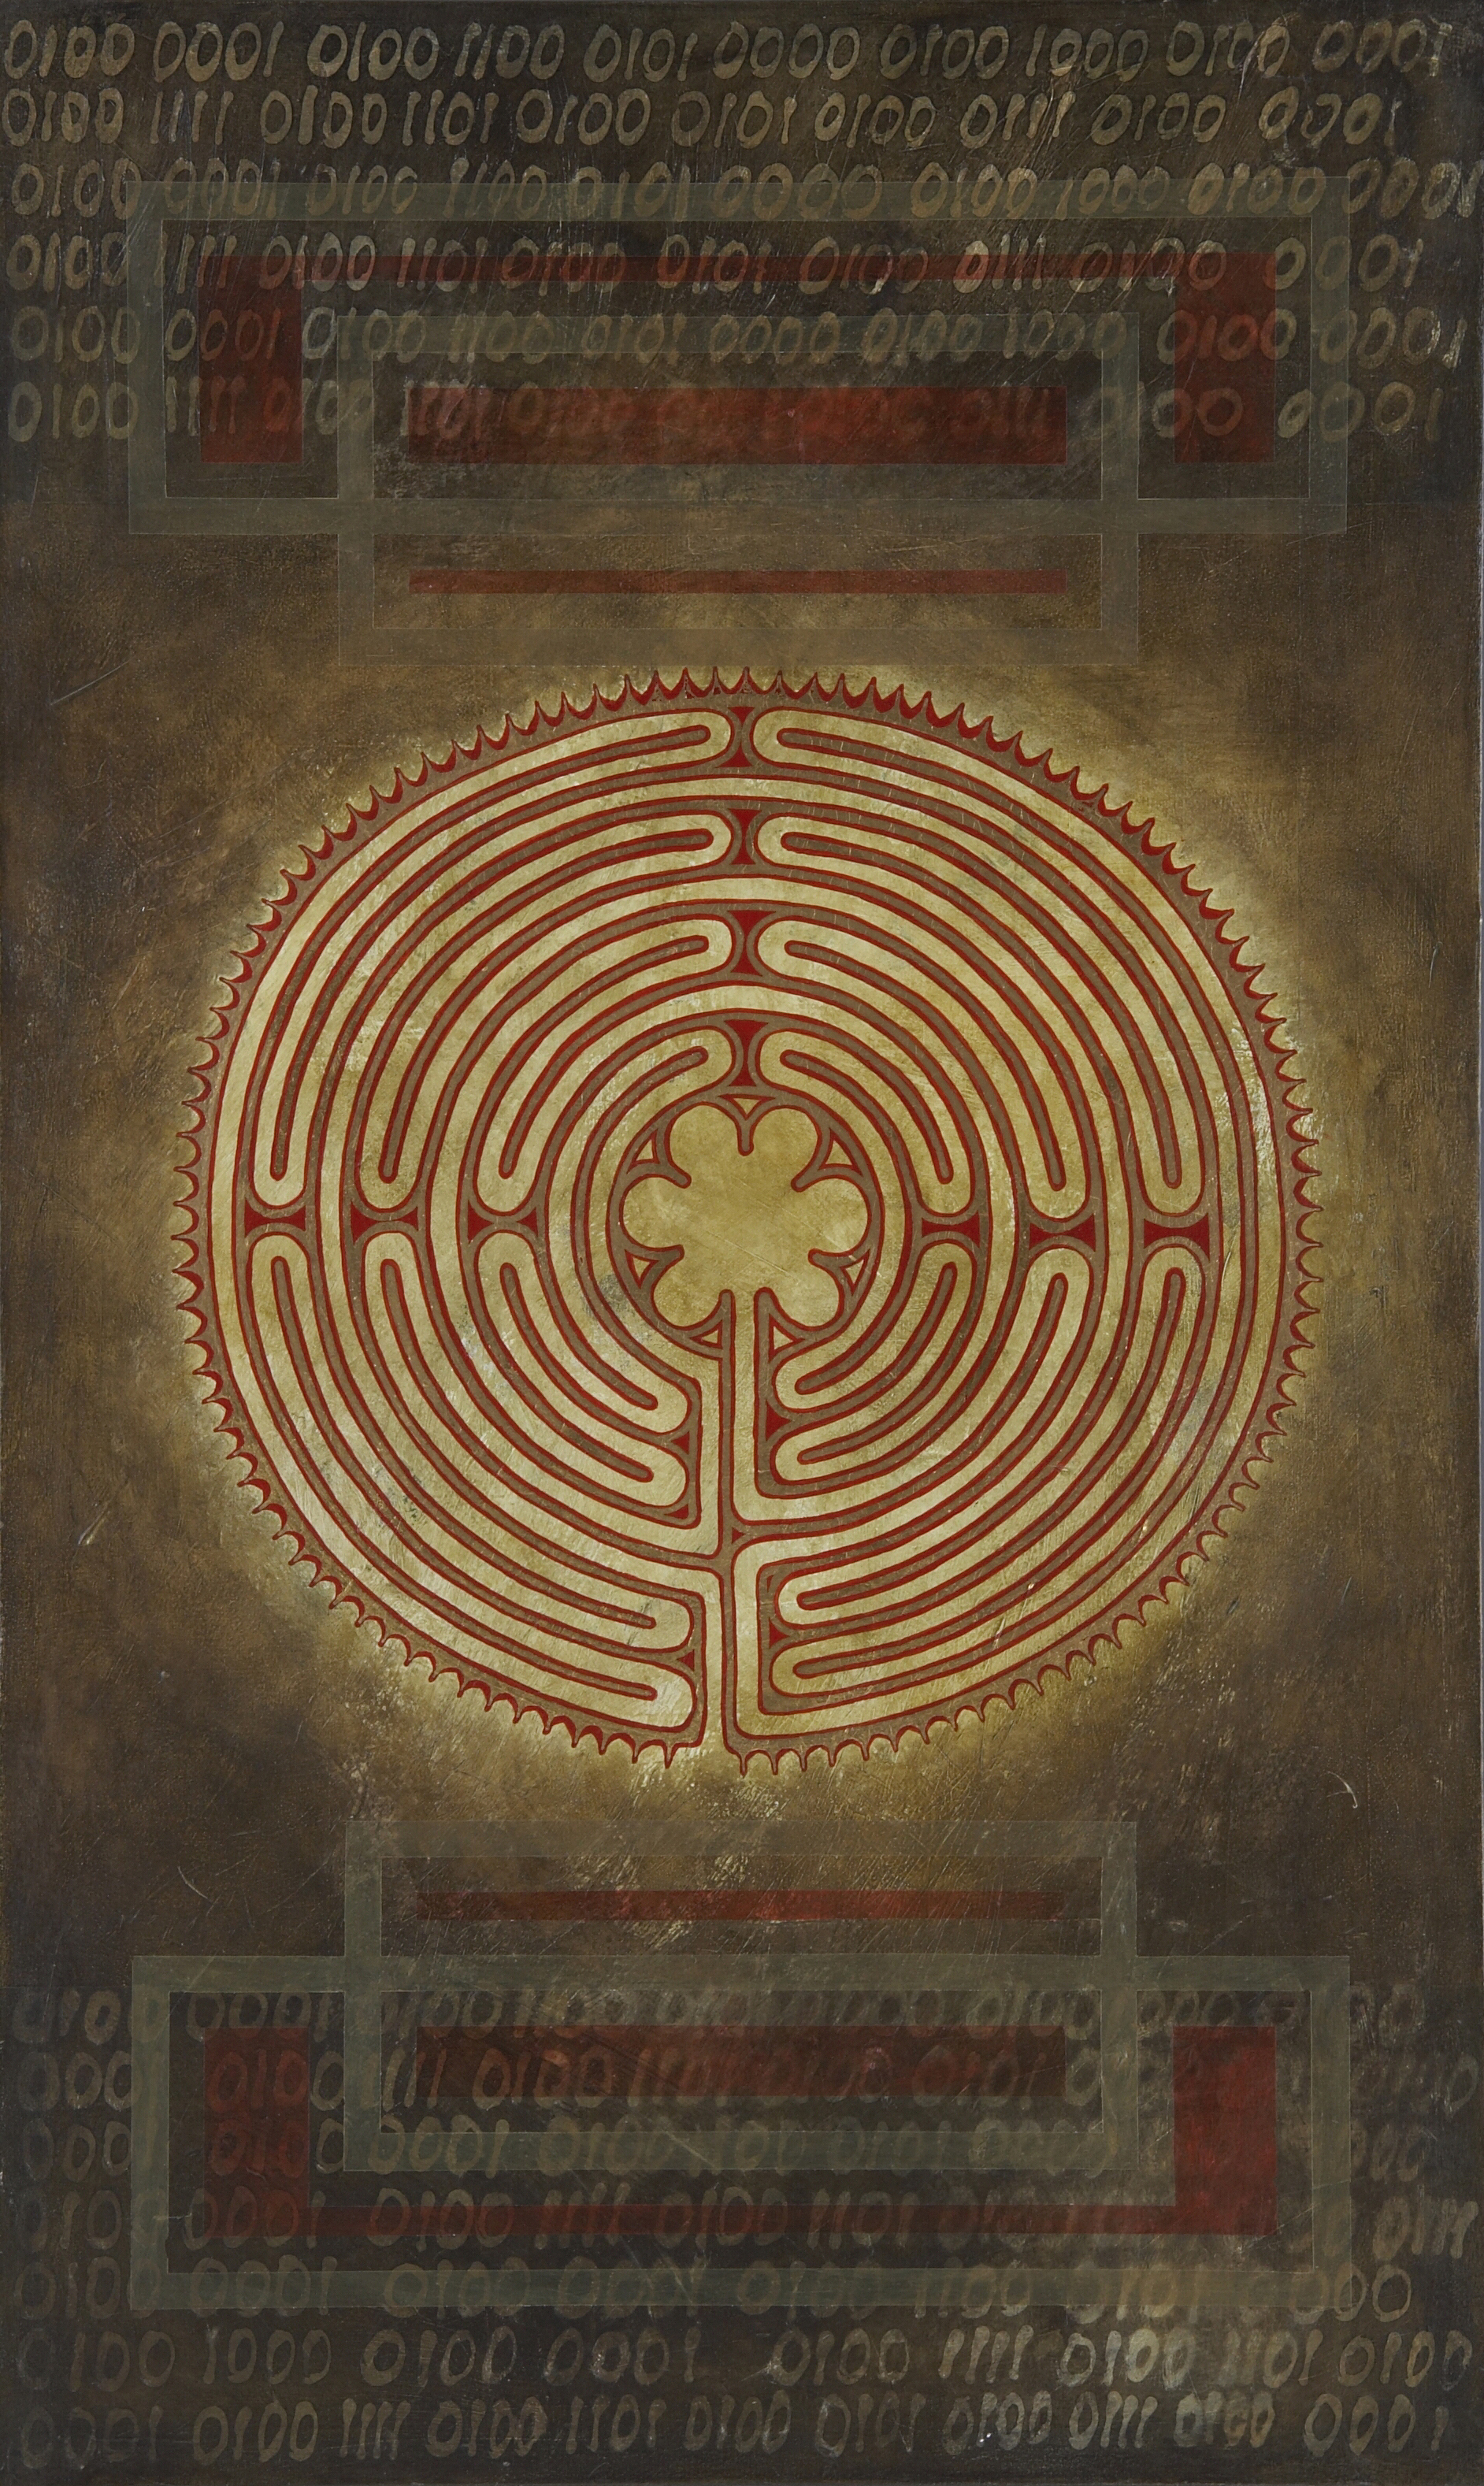 labyrinth-alpha-omega.jpg